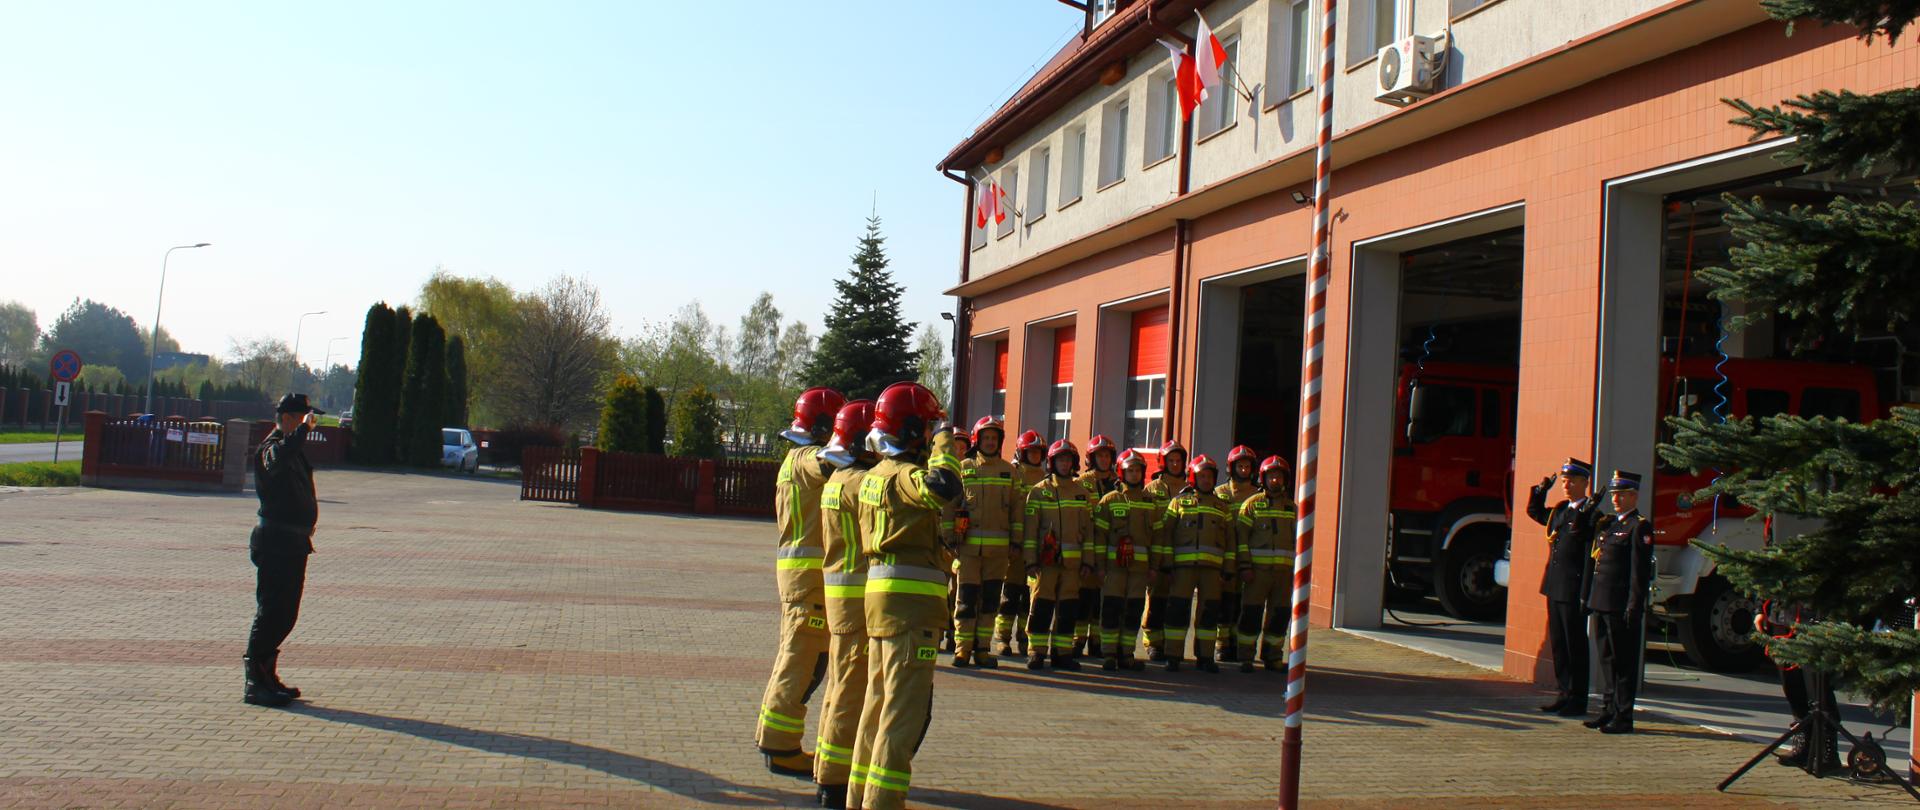 Po wciągnięciu Flagi Państwowej na maszt strażacy oddają honory